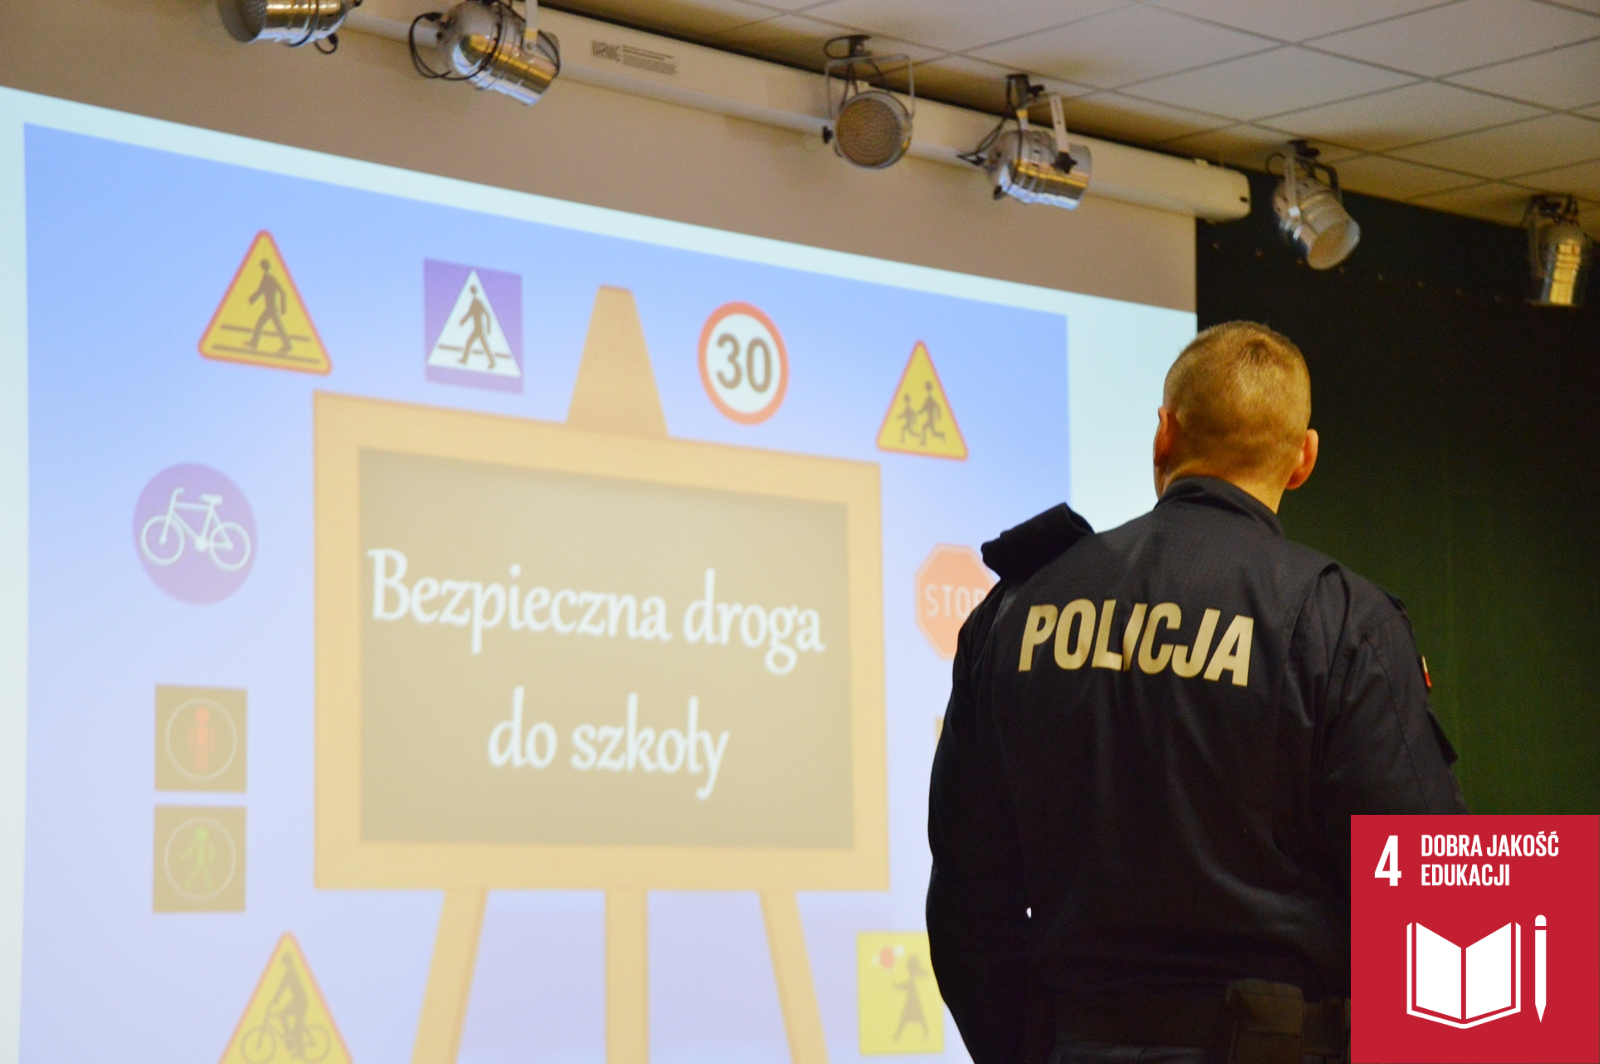 Zdjęcie przedstawia policjanta, który patrzy na wyświetloną za nim planszę. Plansza Przedstawia tablicę z napisem "Bezpieczna droga do szkoły", a wokół tablicy widoczne są znaki drogowe.